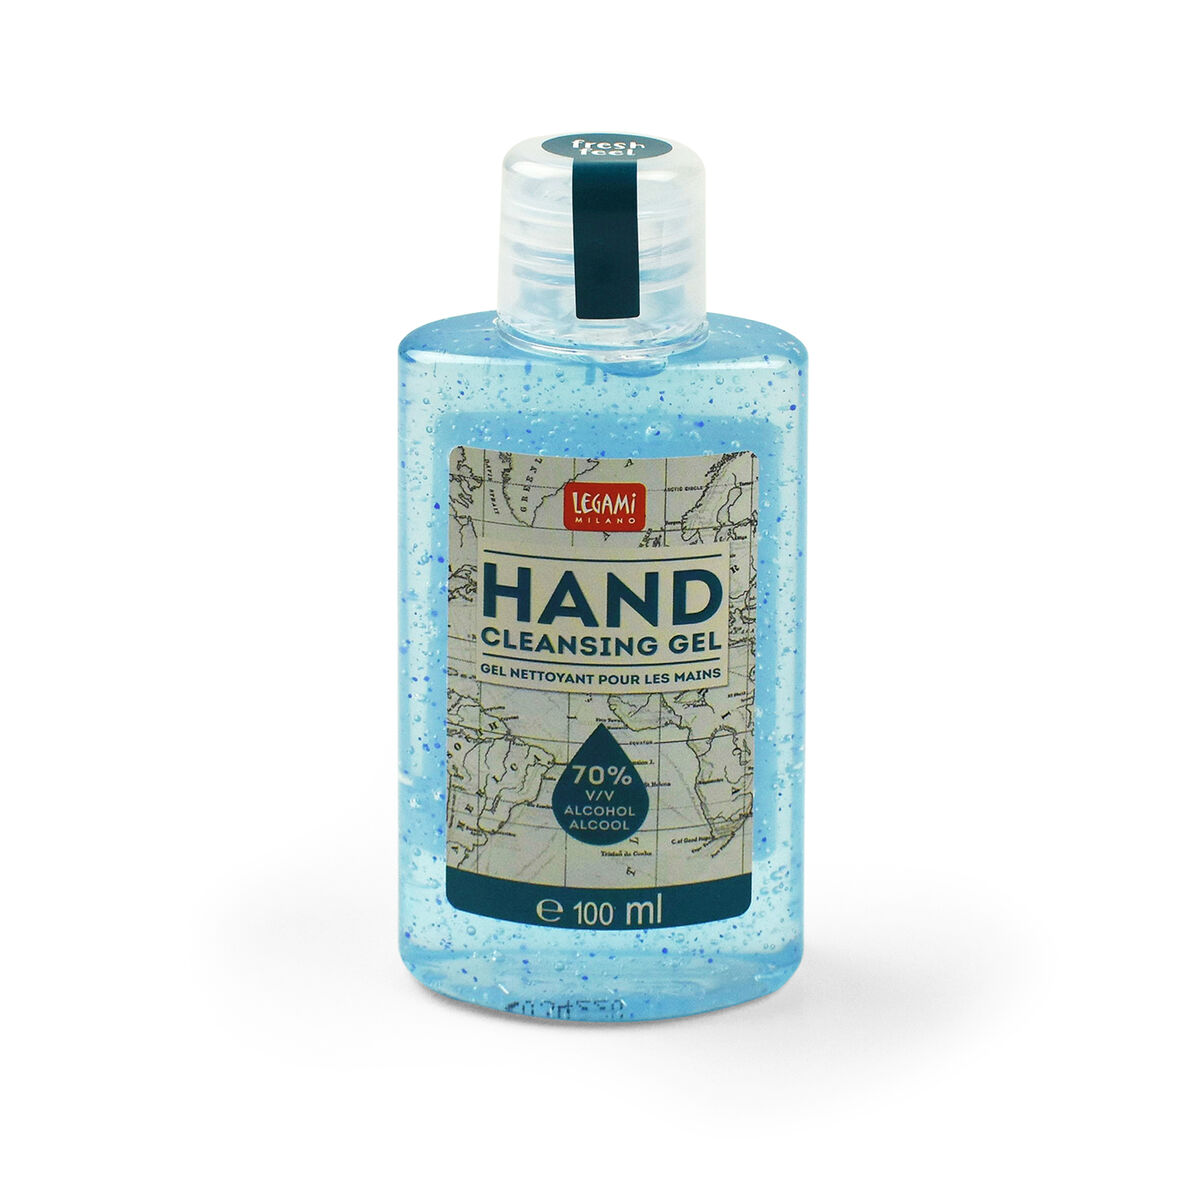 Hand Cleansing Gel - 100 ml, , zoo